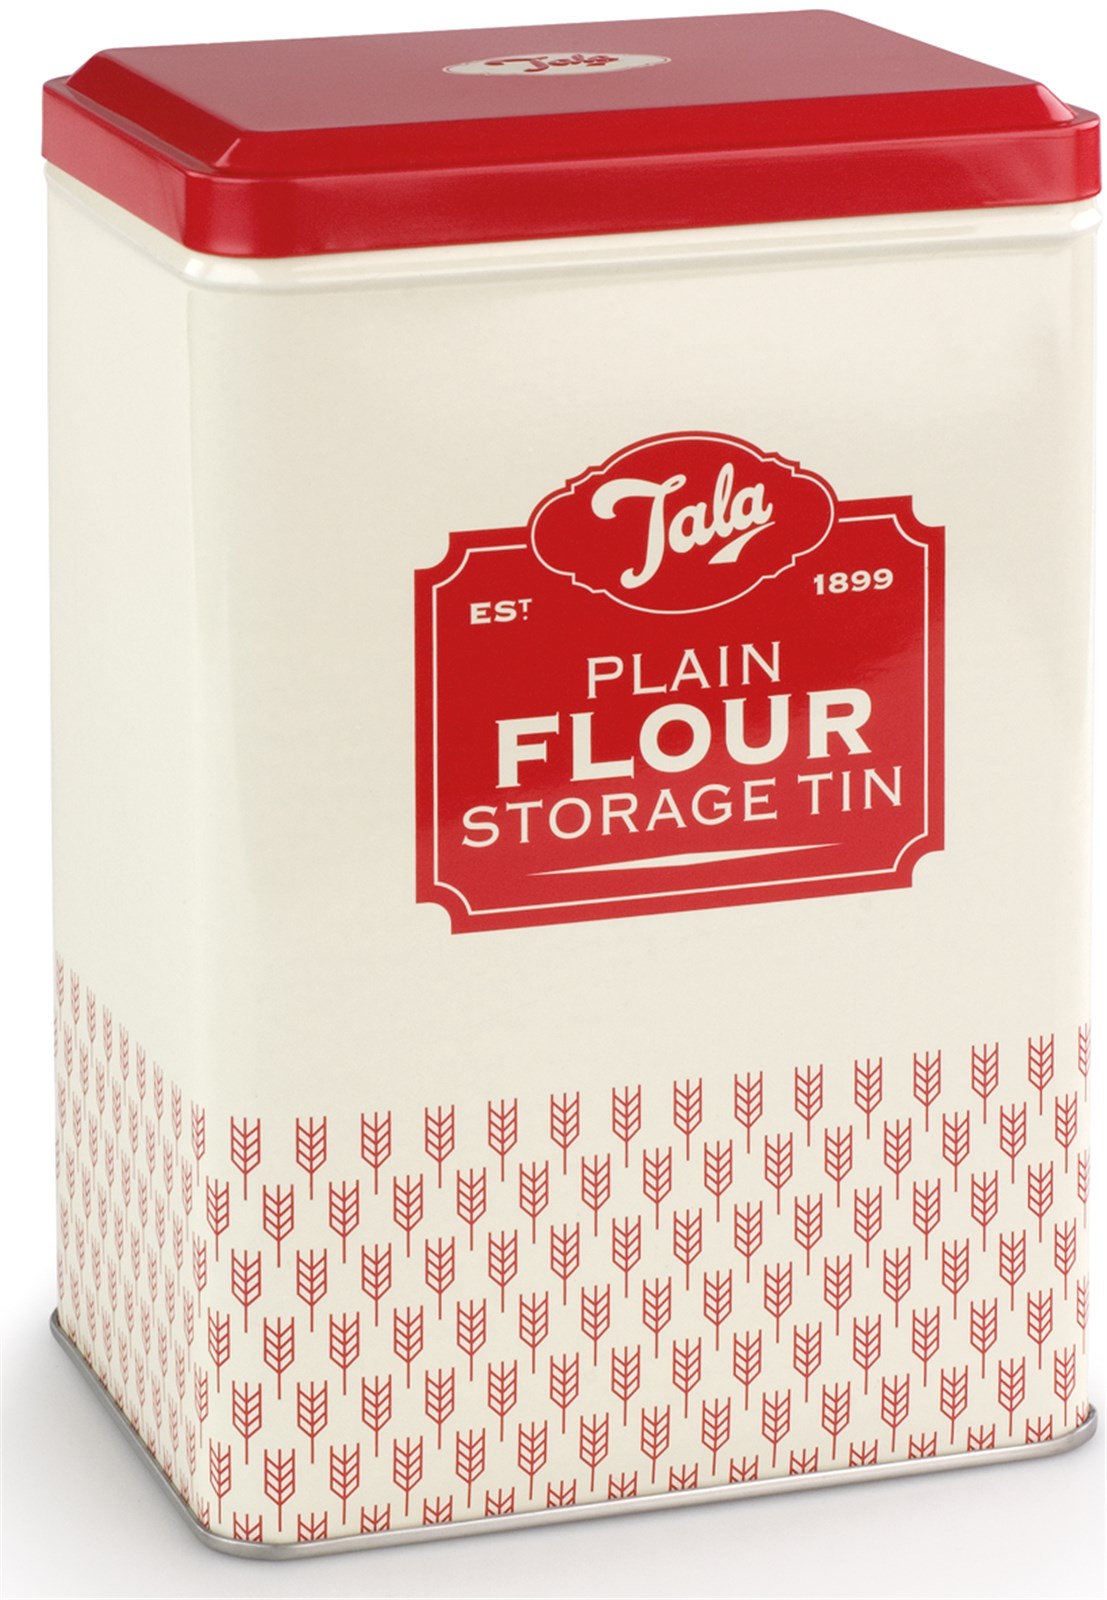 Aufbewahrungsdose Plain Flour, Rot, 9.2x18.6x12.1cm in Rot präsentiert im Onlineshop von KAQTU Design AG. Aufbewahrungsdose ist von Tala